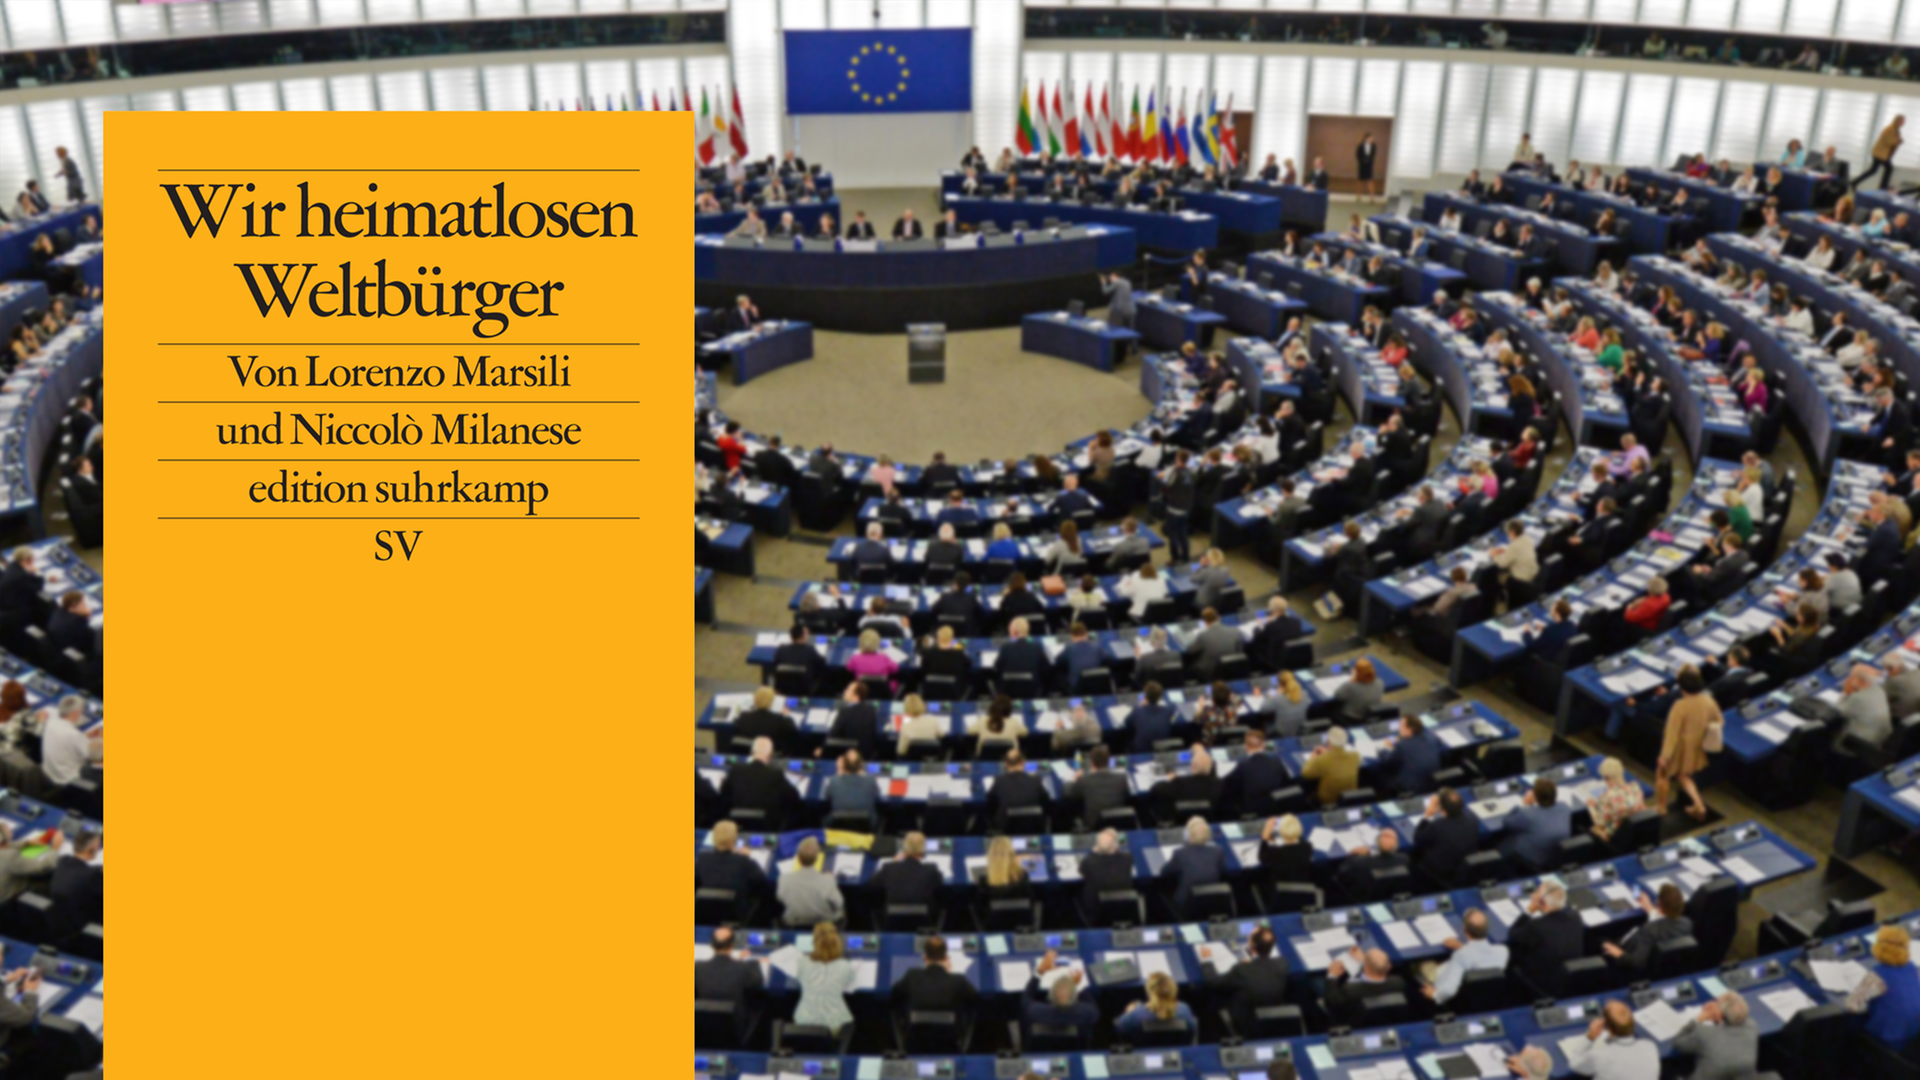 Im Vordergrund ist das Cover des Buches "Wir heimatlosen Weltbürger". Im Hintergrund ist ein Blick auf das Plenum des EU-Parlaments in Strasbourg.